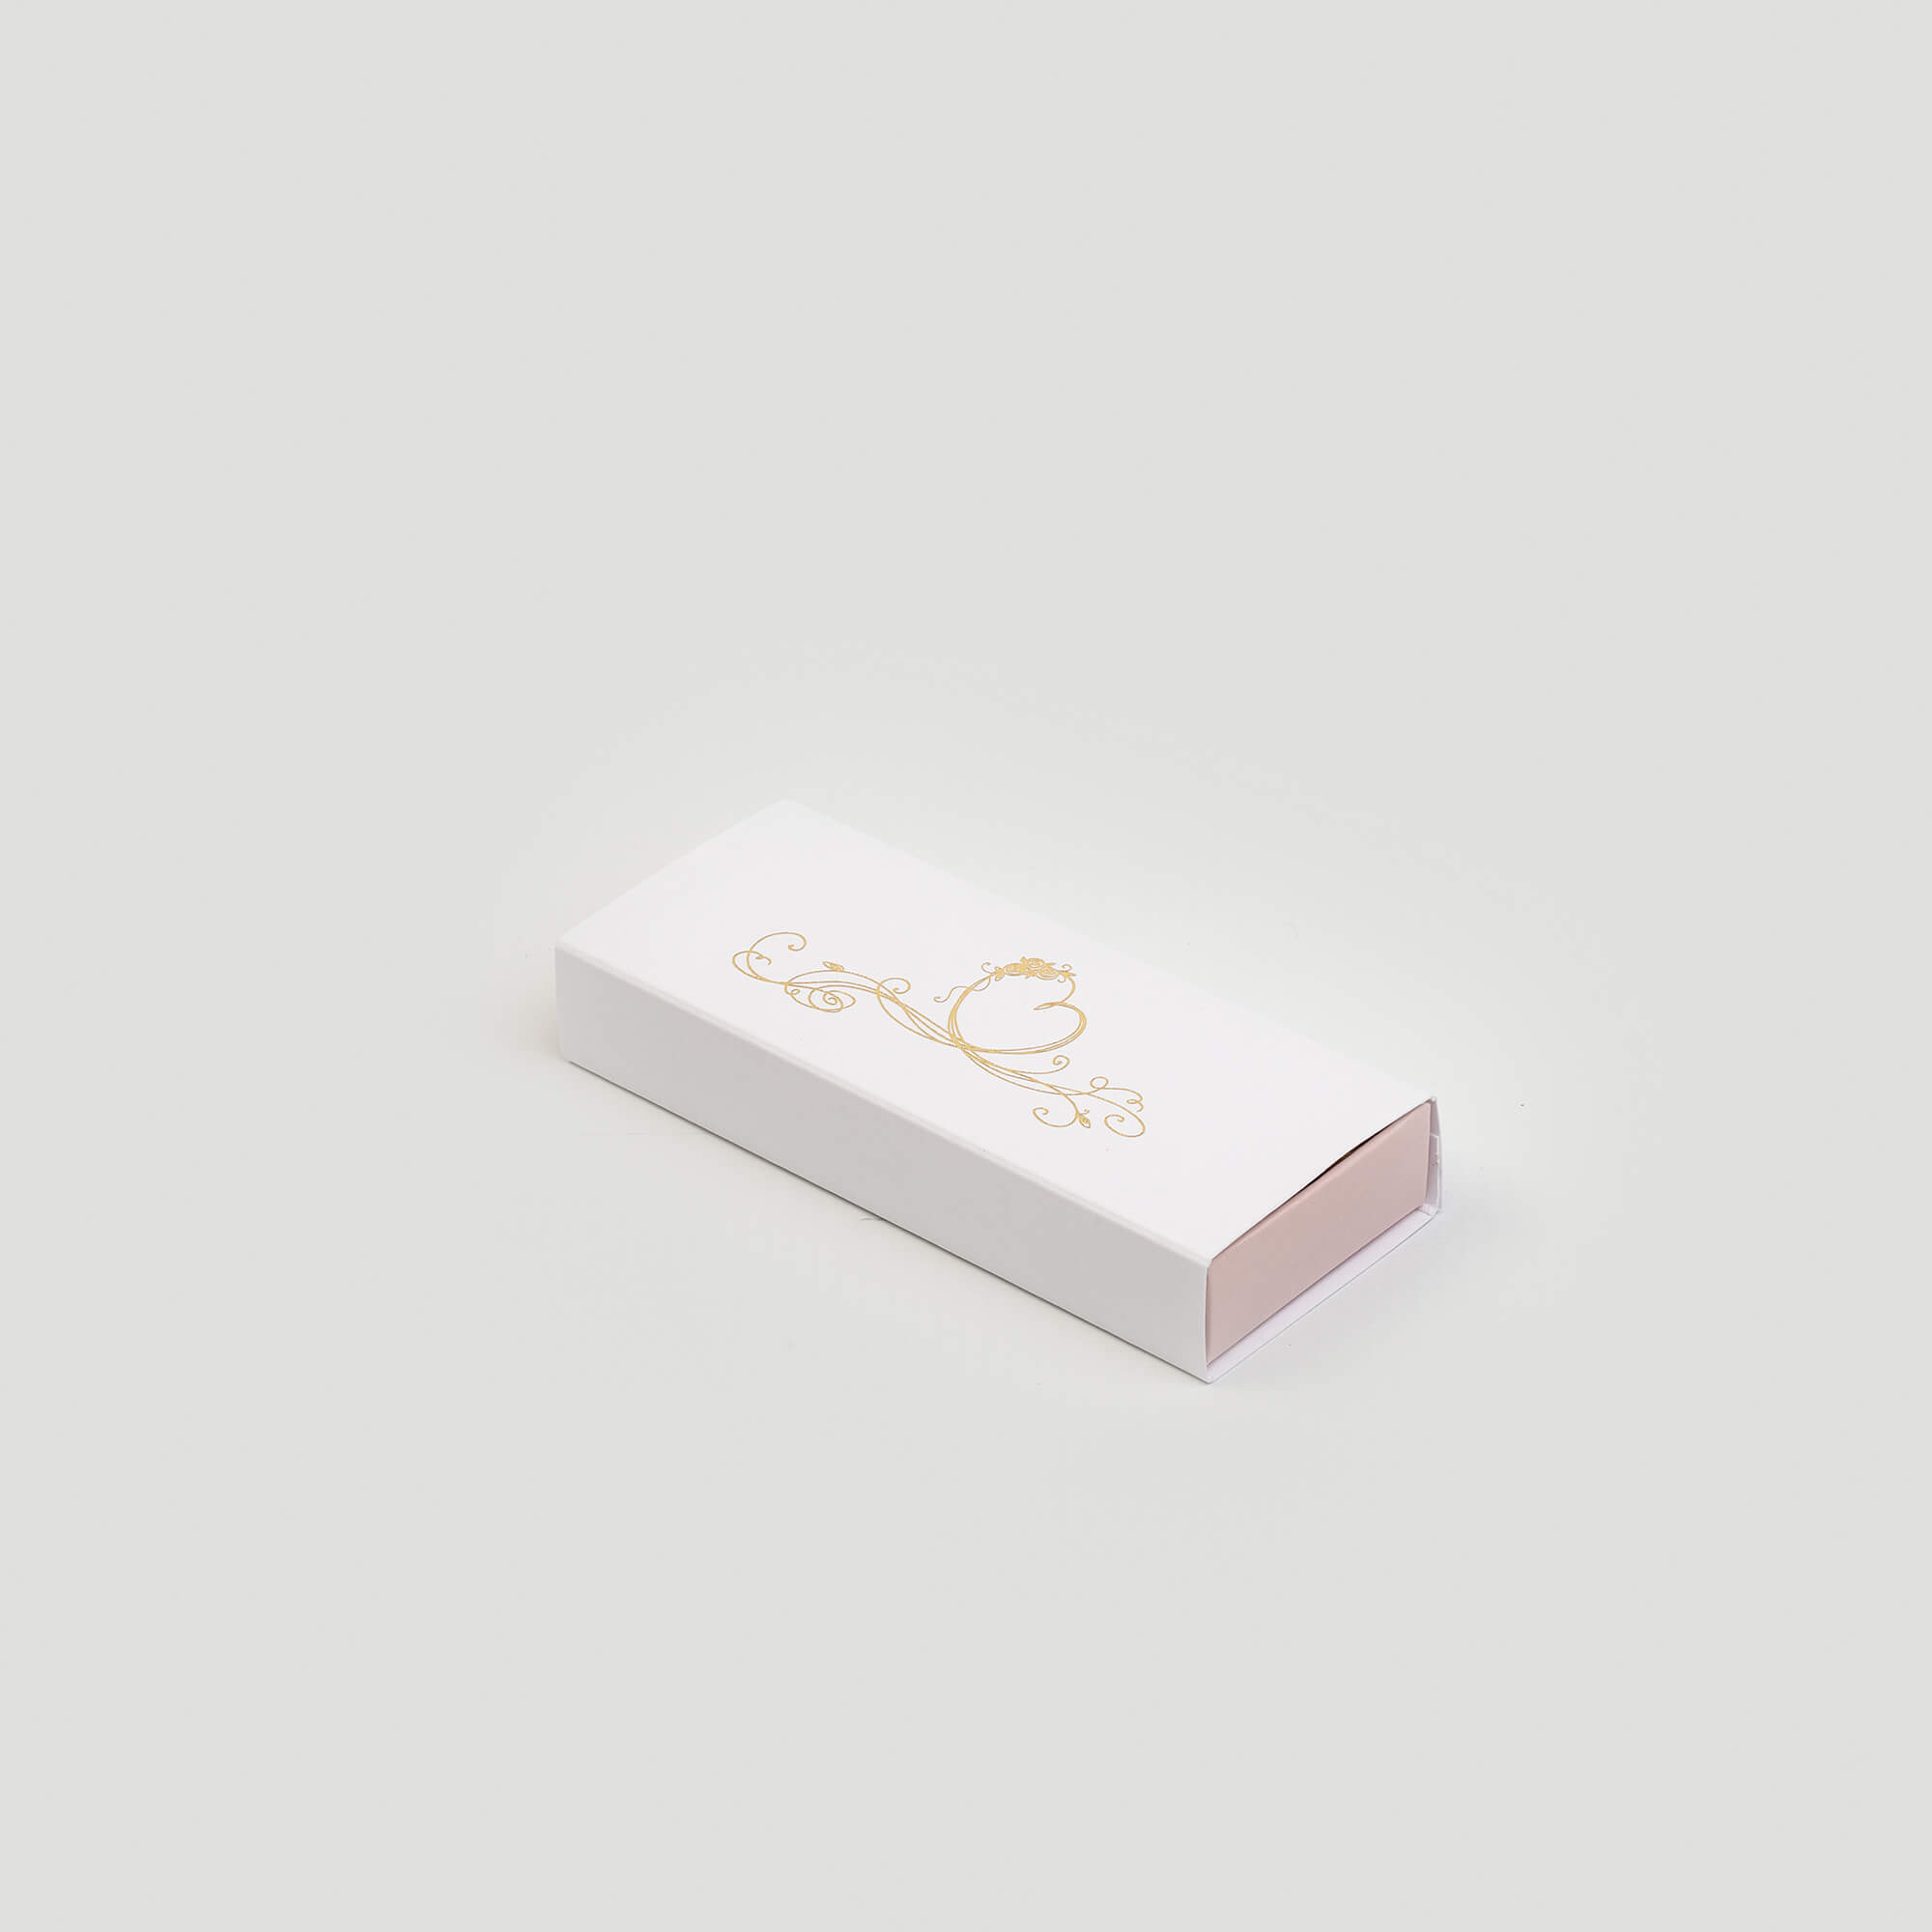 Boîte tiroir pour dragées, 45x110x20, intérieur couleur rose, extérieur couleur blanc, impression dorée